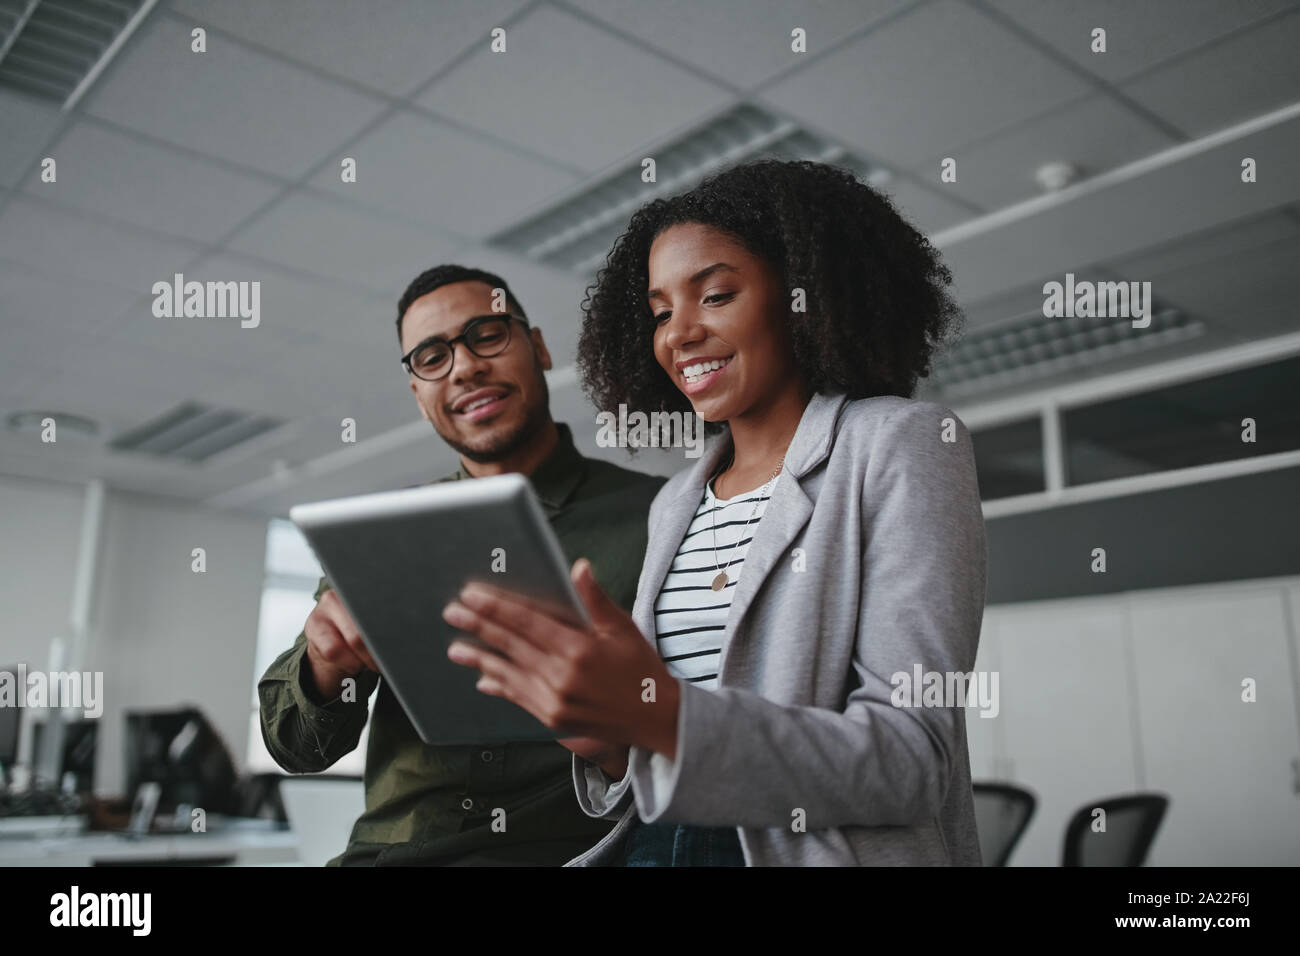 Portrait of smiling professional young African American businesswoman showing données sur tablette numérique à homme in office Banque D'Images